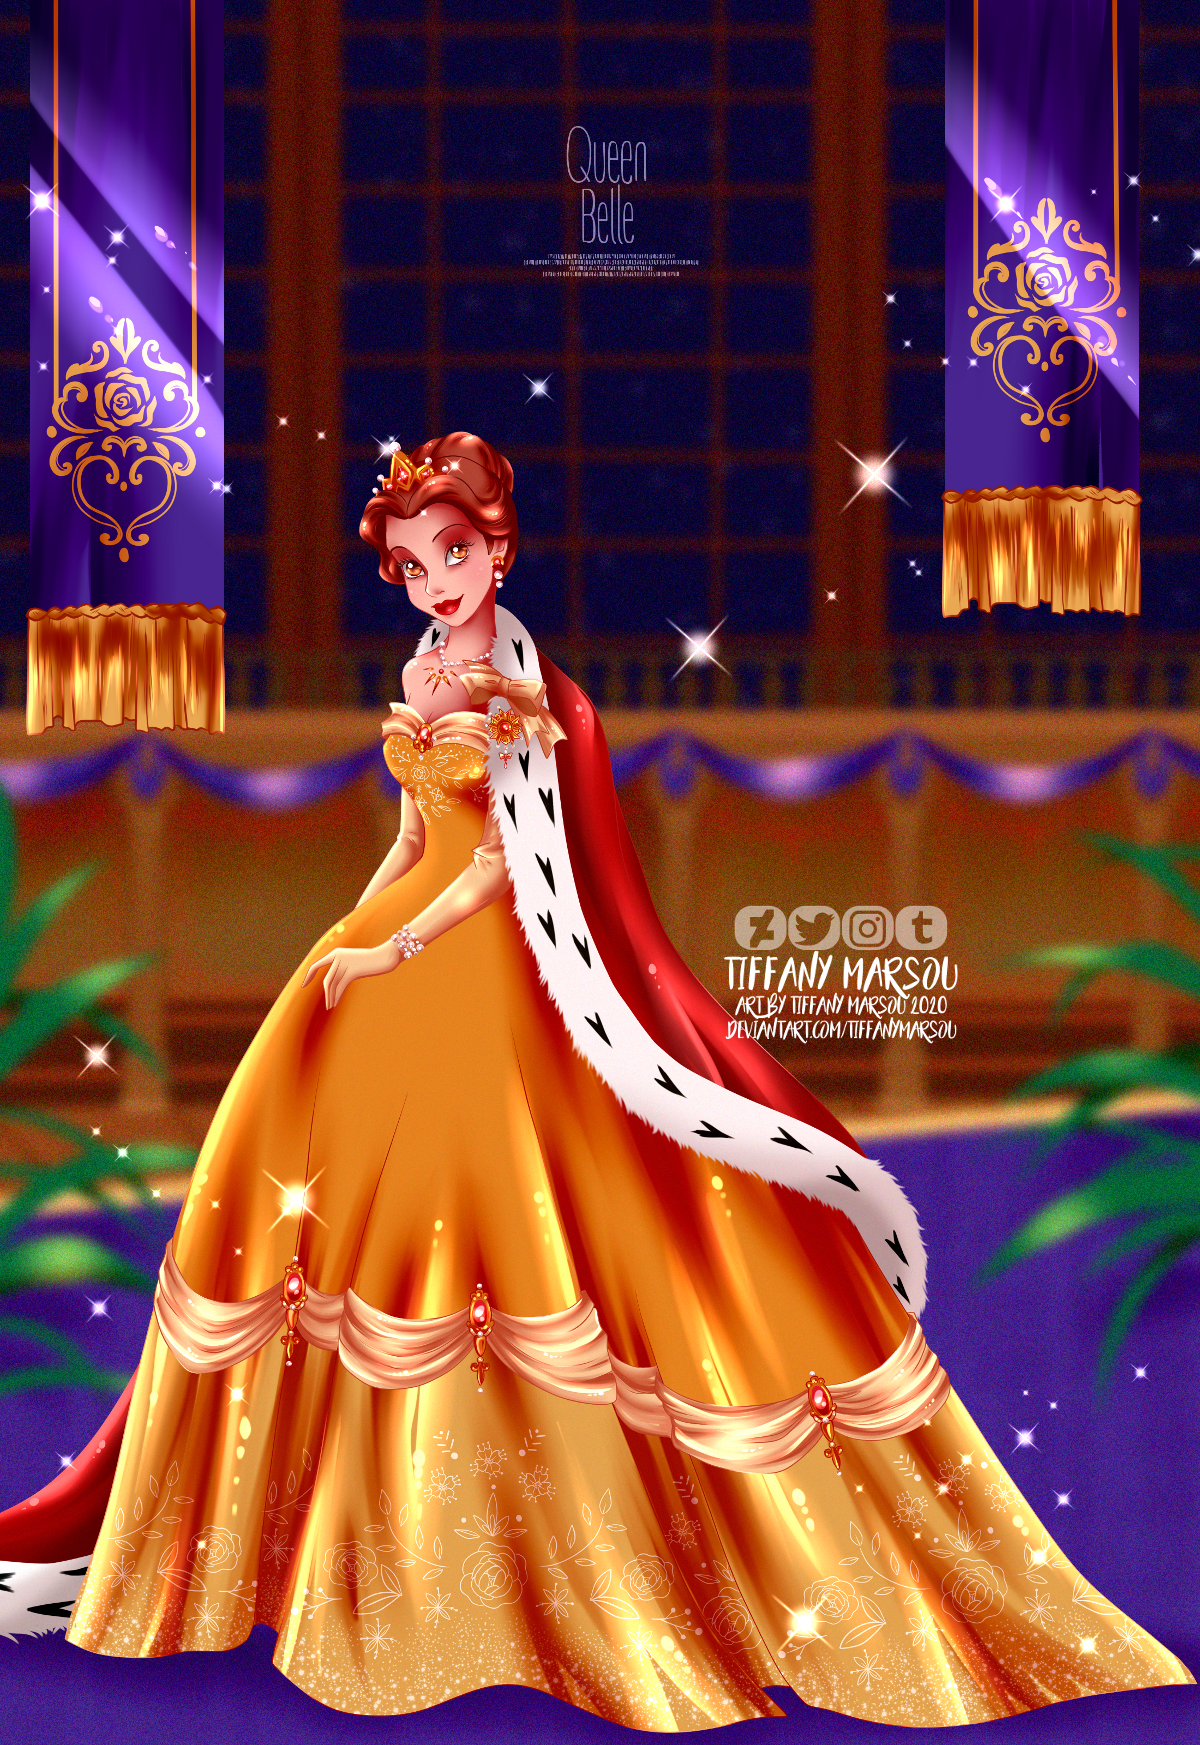 Queen Belle by tiffanymarsou on DeviantArt